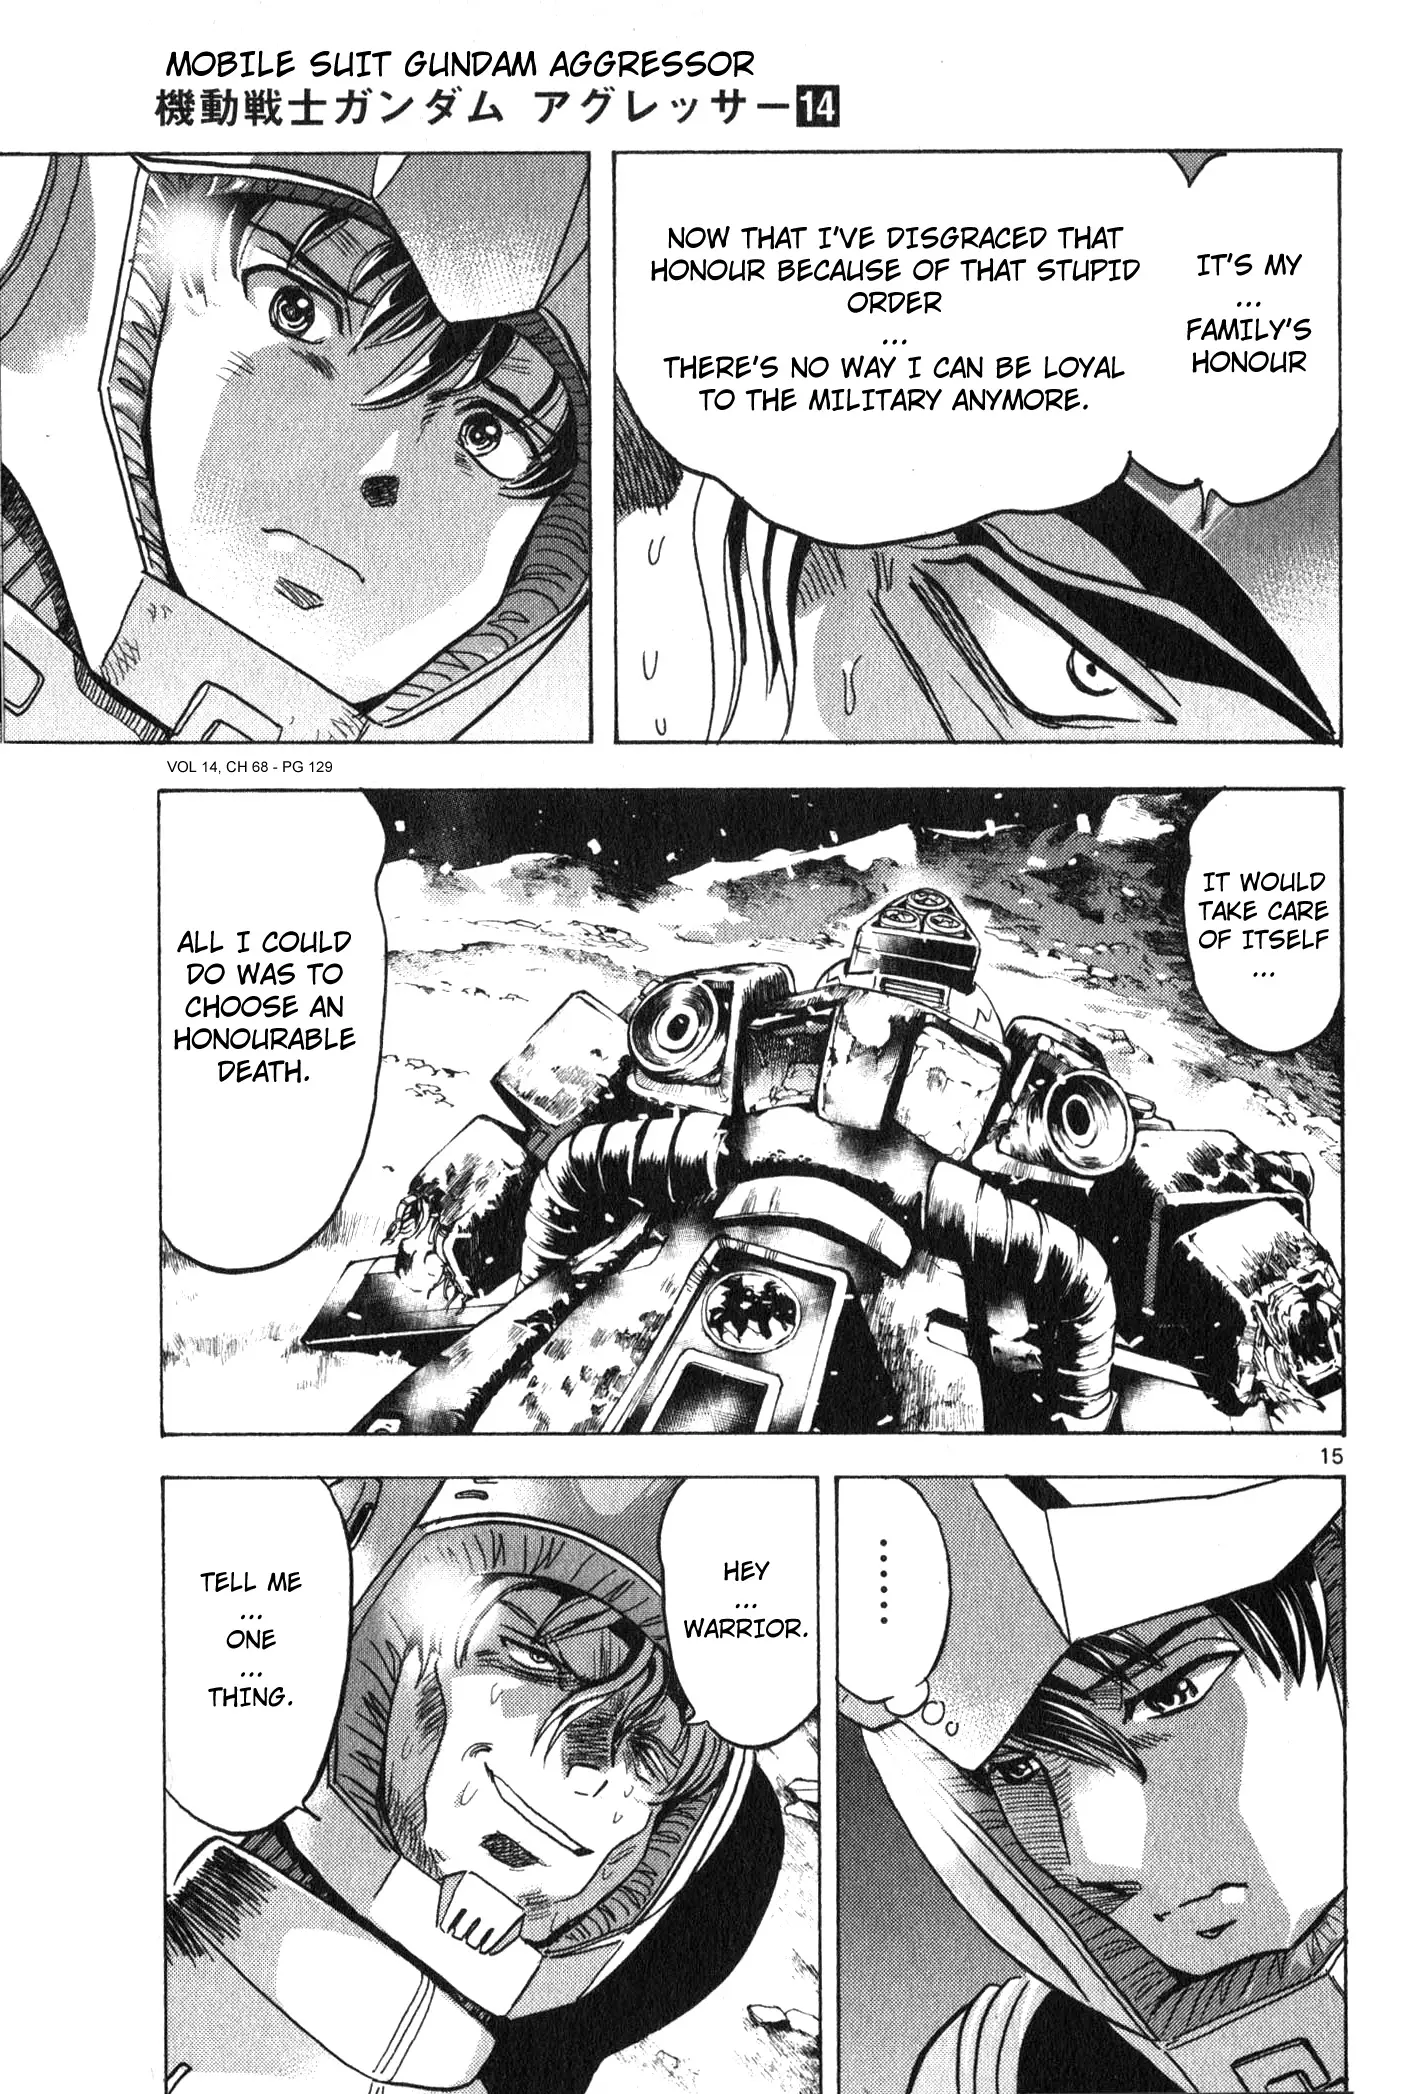 Mobile Suit Gundam Aggressor - 68 page 13-6a068d02